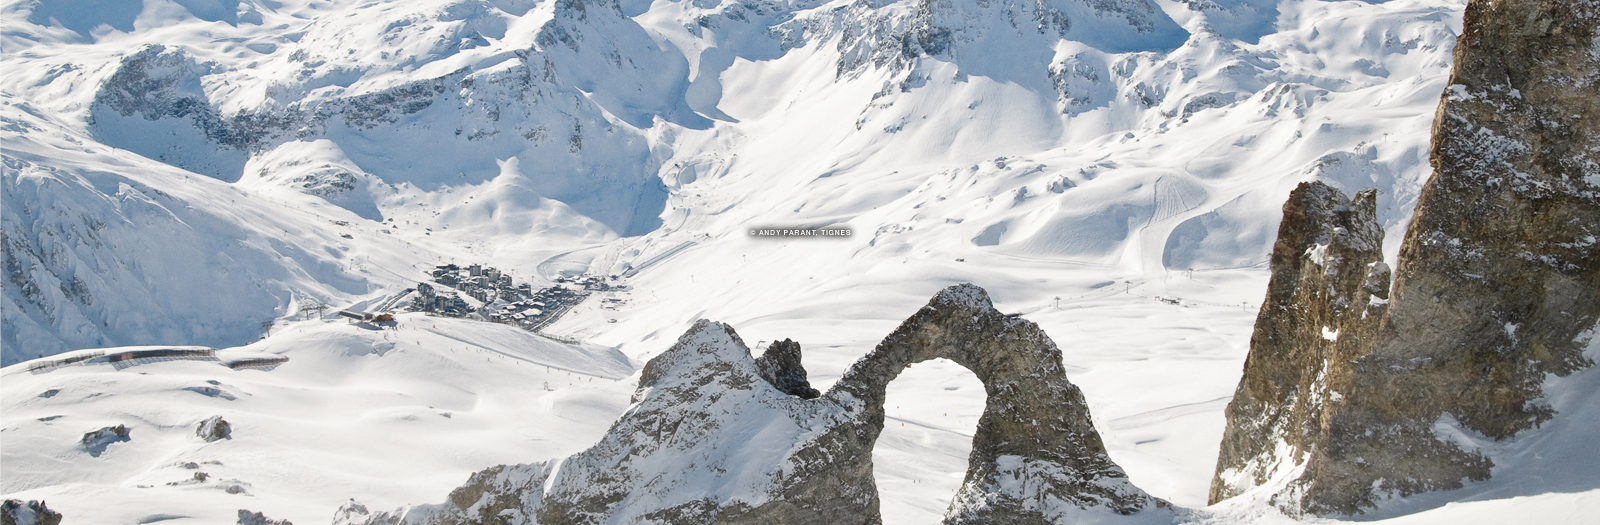 Tignes Ski Resort | Tignes, FR